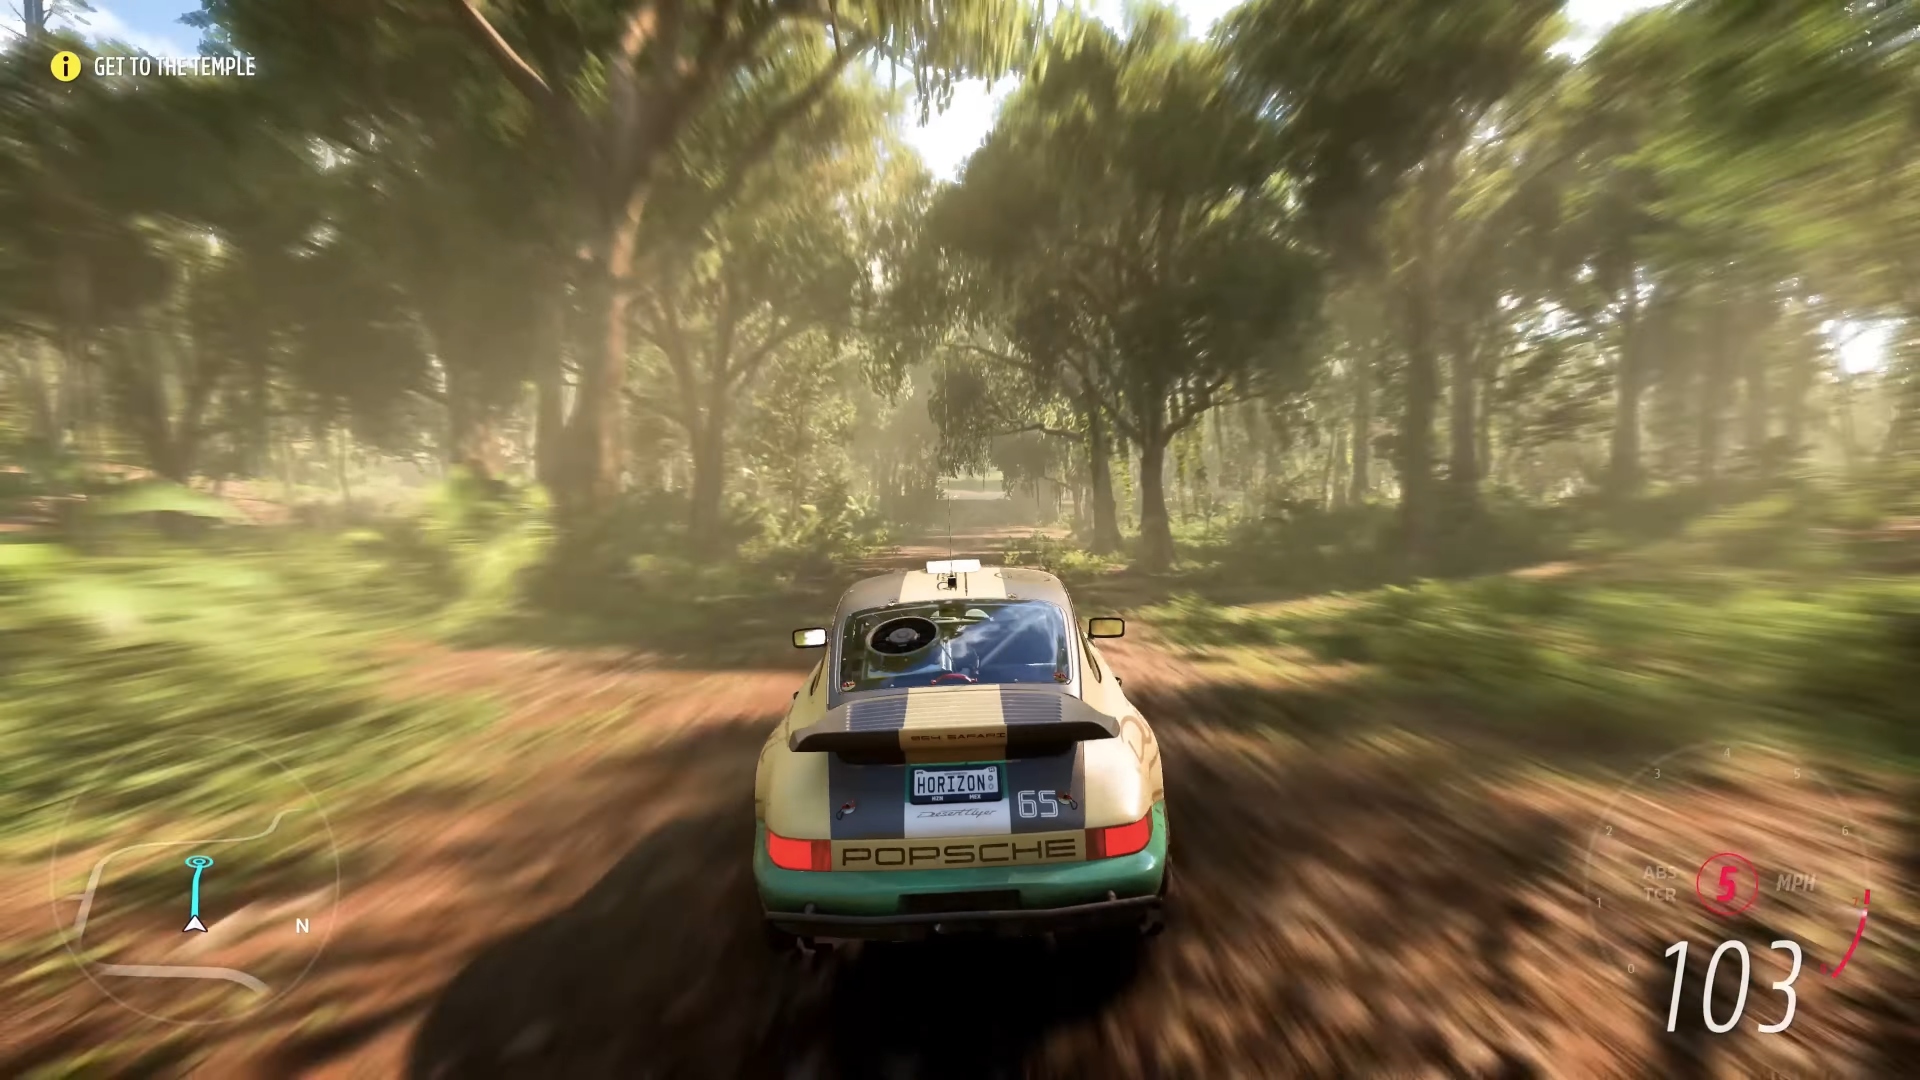 Najlepsze gry międzyplatformowe: Forza Horizon 5. Zdjęcie przedstawia samochód przejeżdżający przez dżunglę.